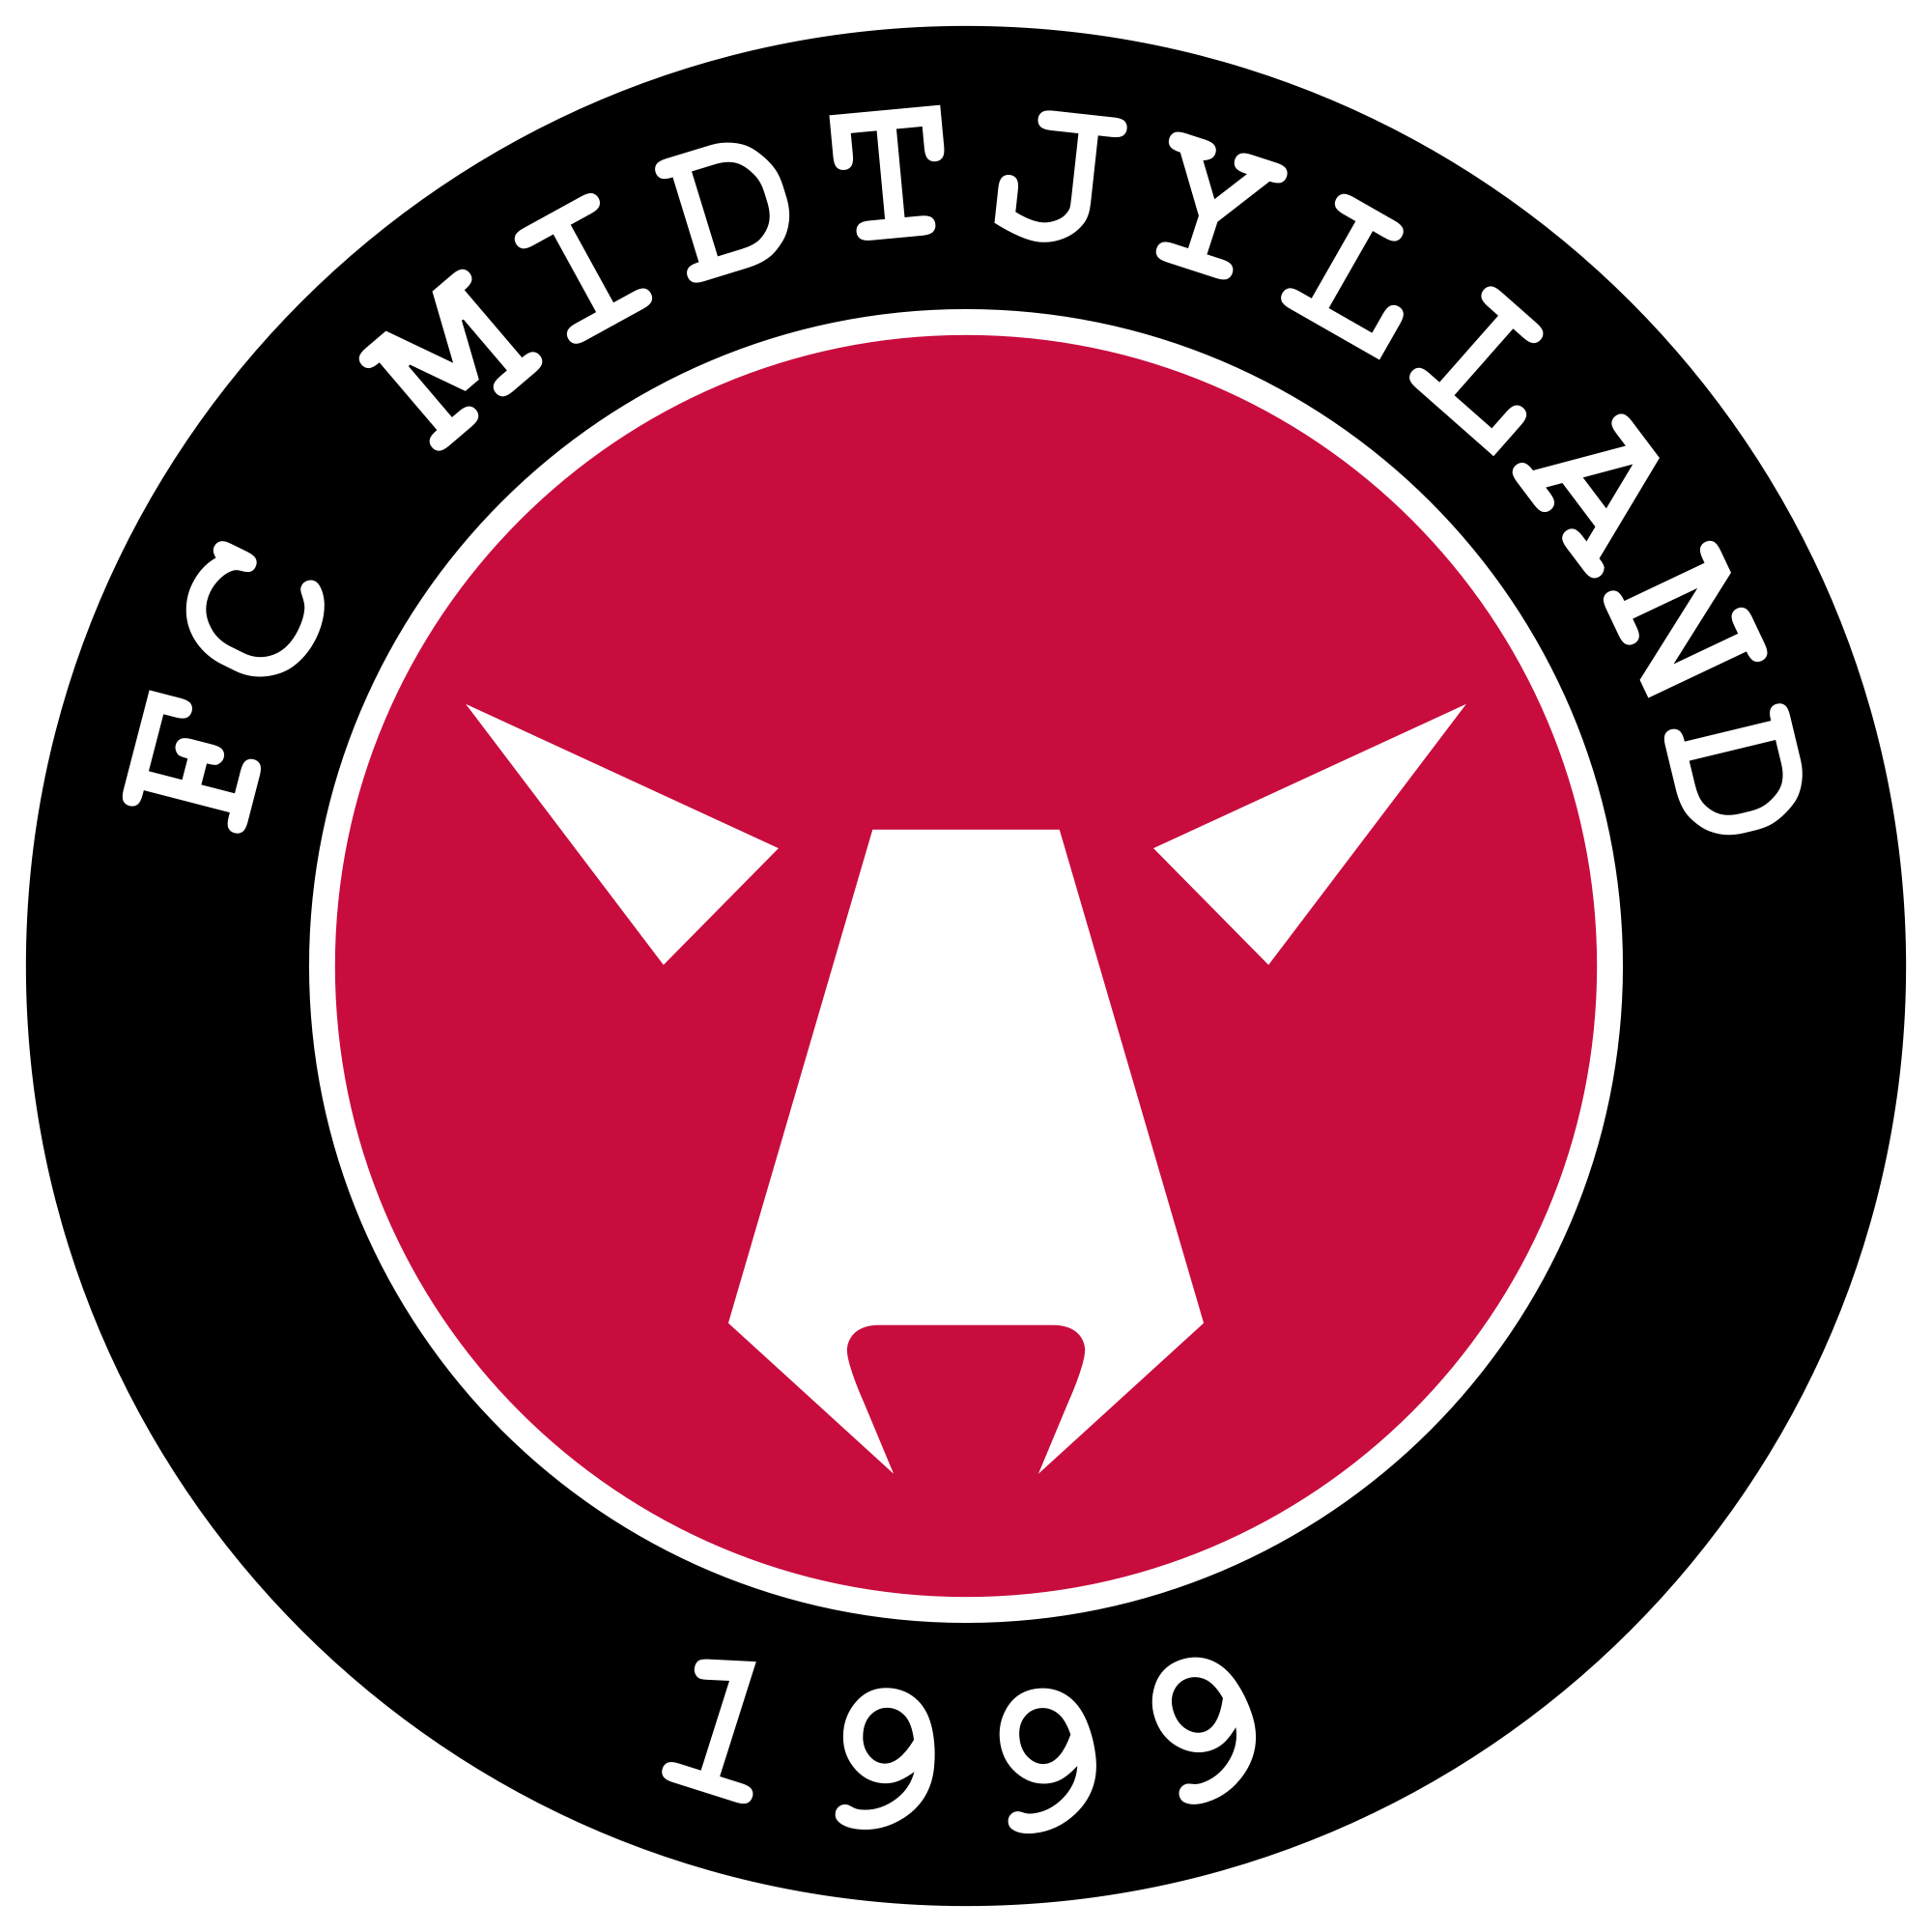 Fodboldklubben FC Midtjyllands officielle logo.